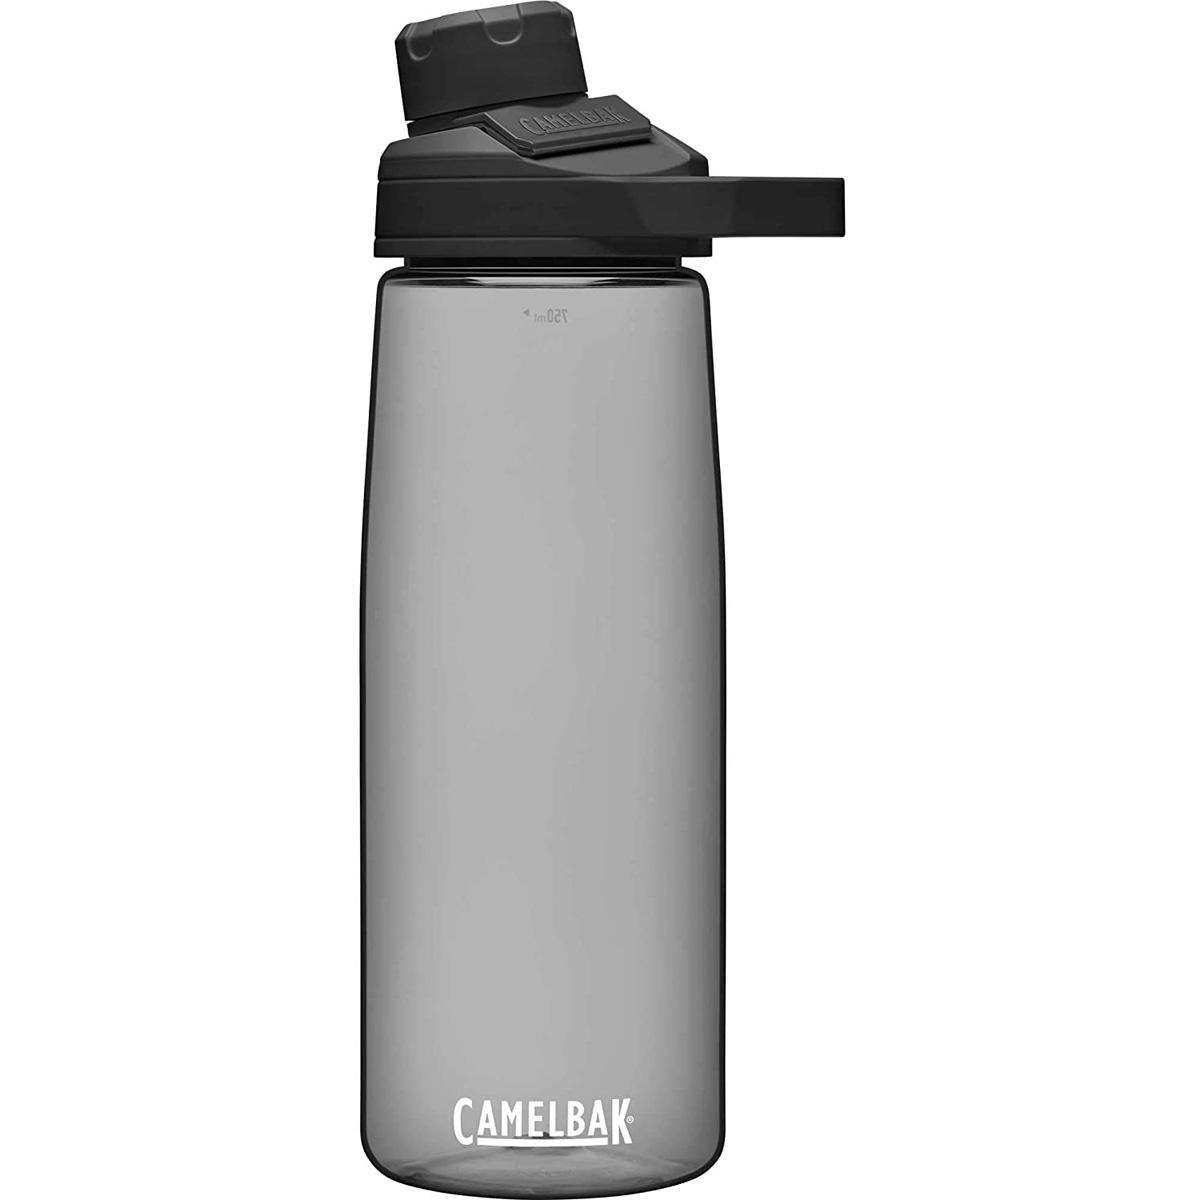 25oz CamelBak Chute Mag Water Bottle for $6.93